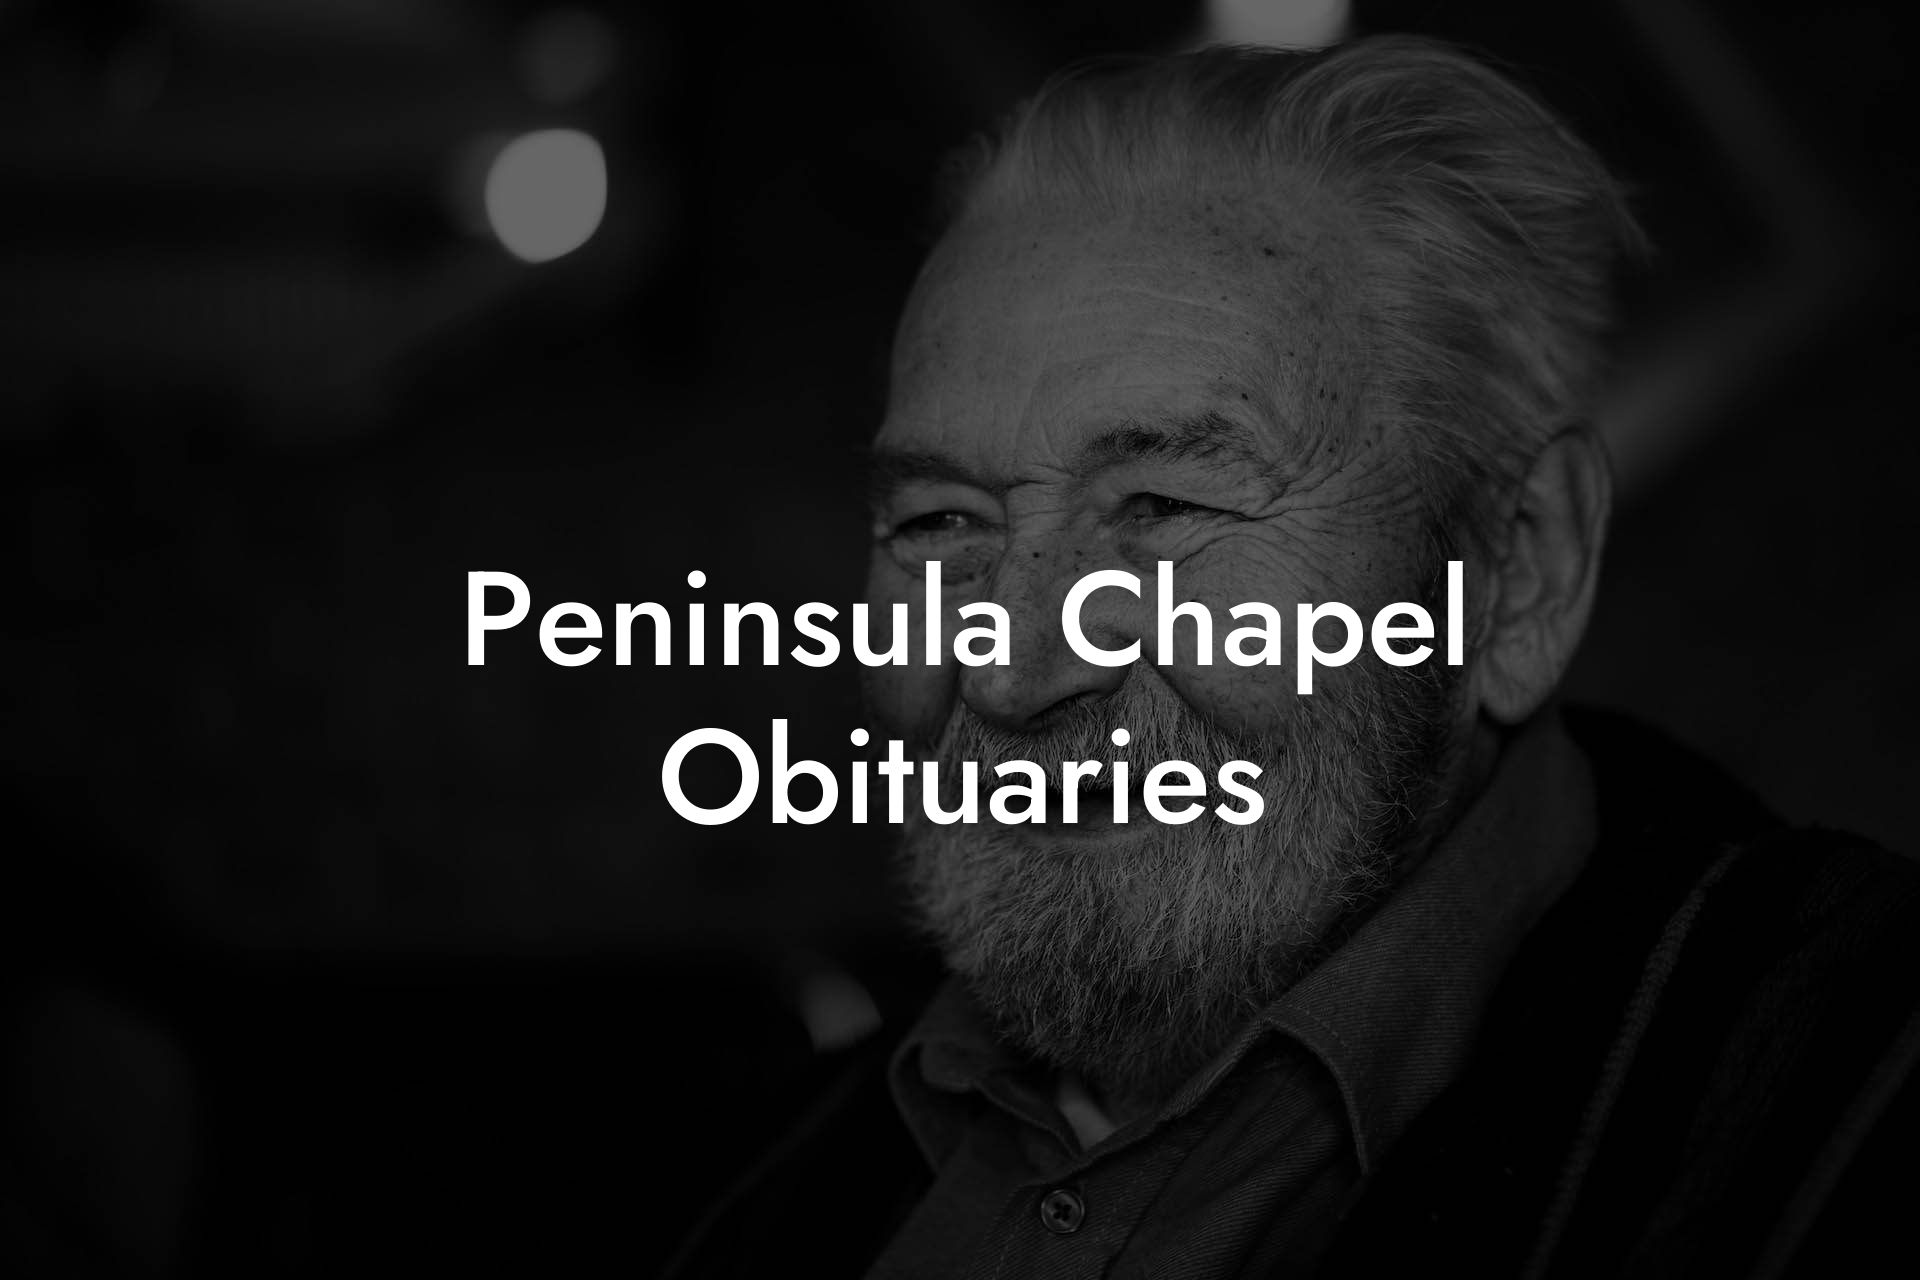 Peninsula Chapel Obituaries